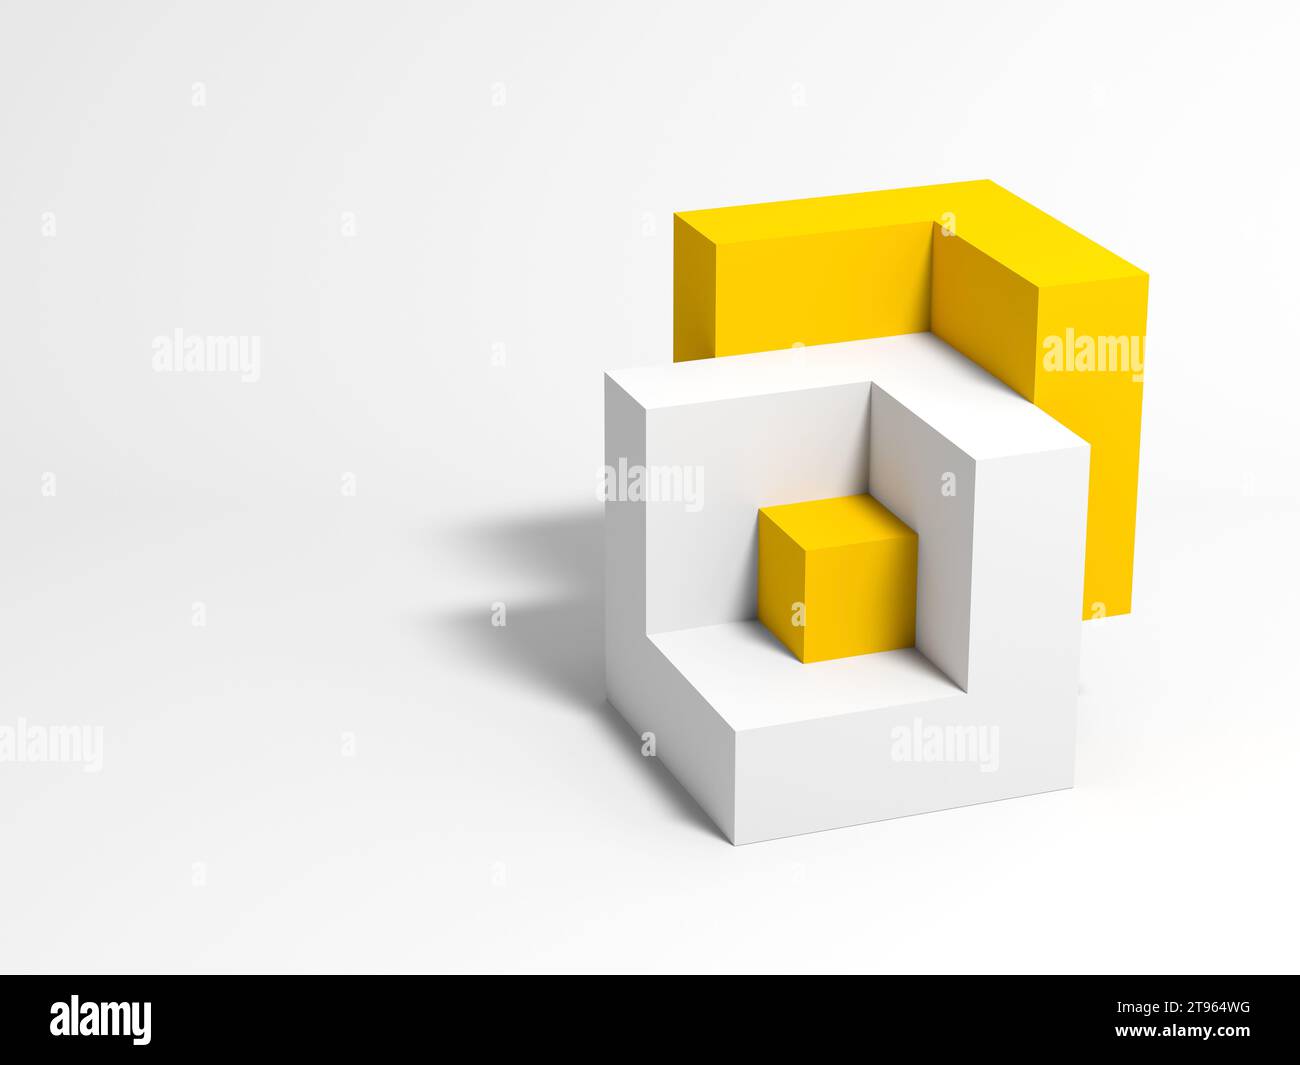 Installation géométrique abstraite avec des formes cubiques jaunes et blanches connectées sur fond blanc. illustration de rendu 3d. Banque D'Images